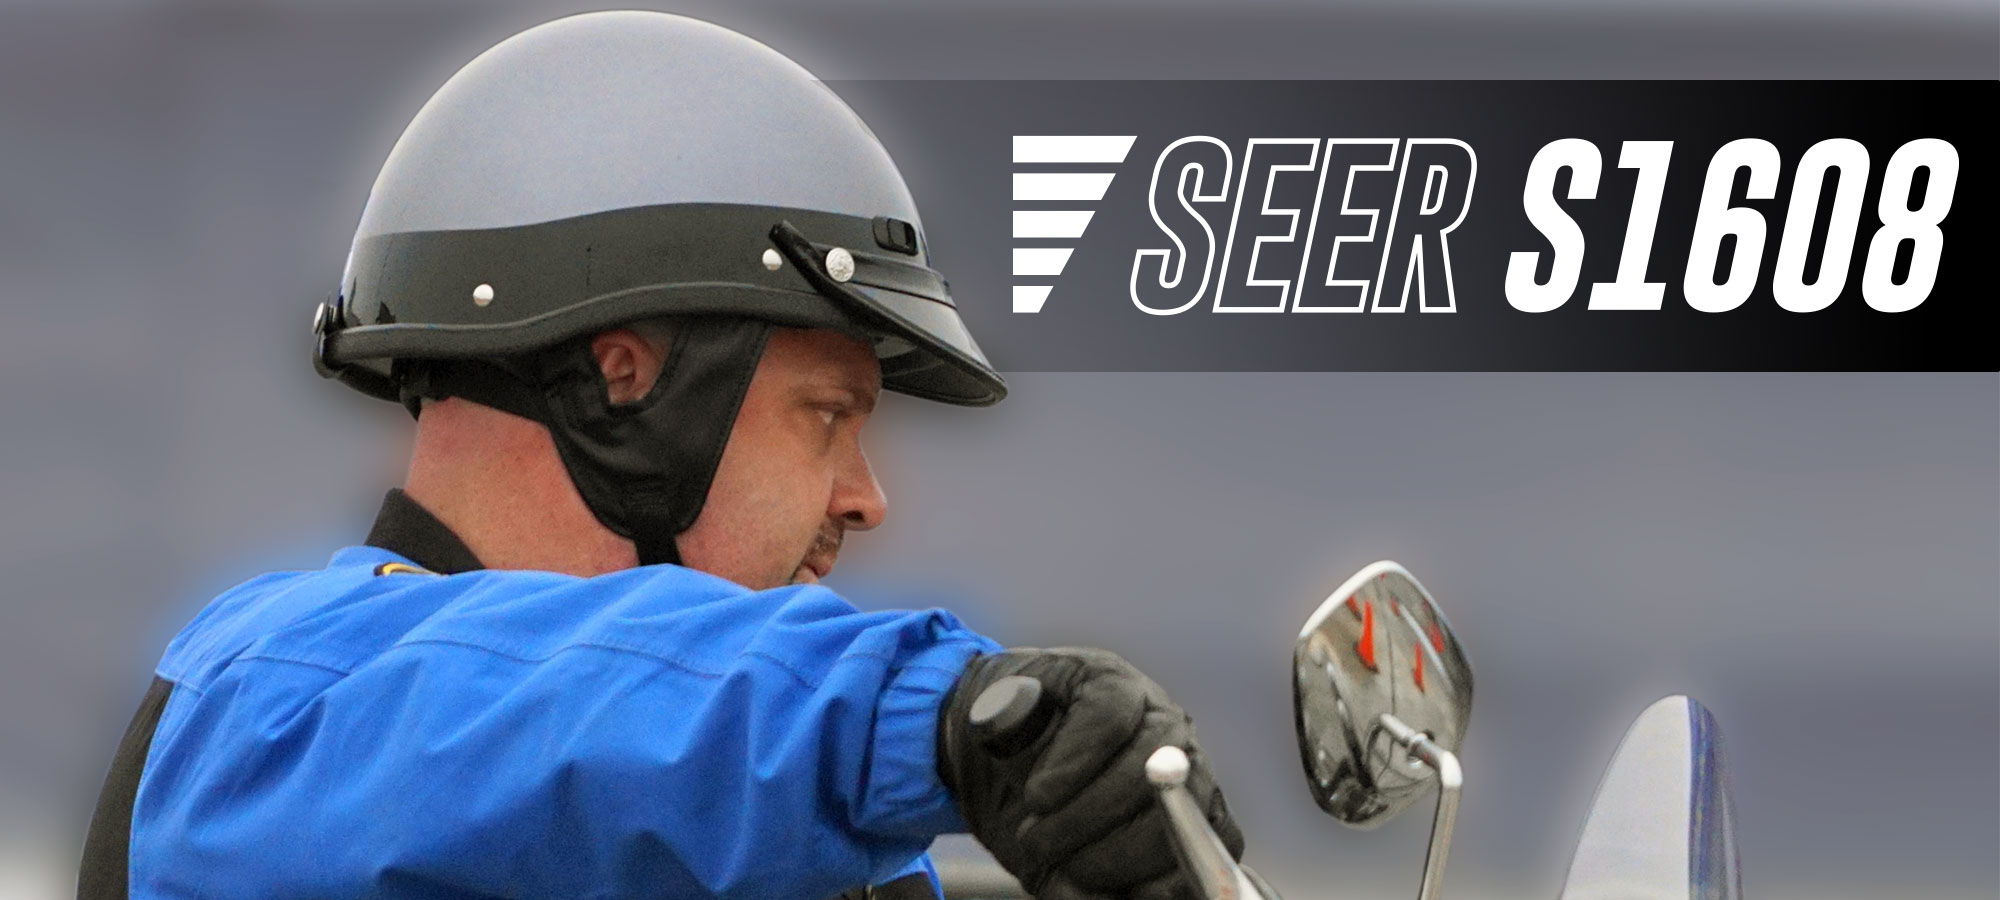 Super Seer S1608 Fiberglass Motorcycle Helmet